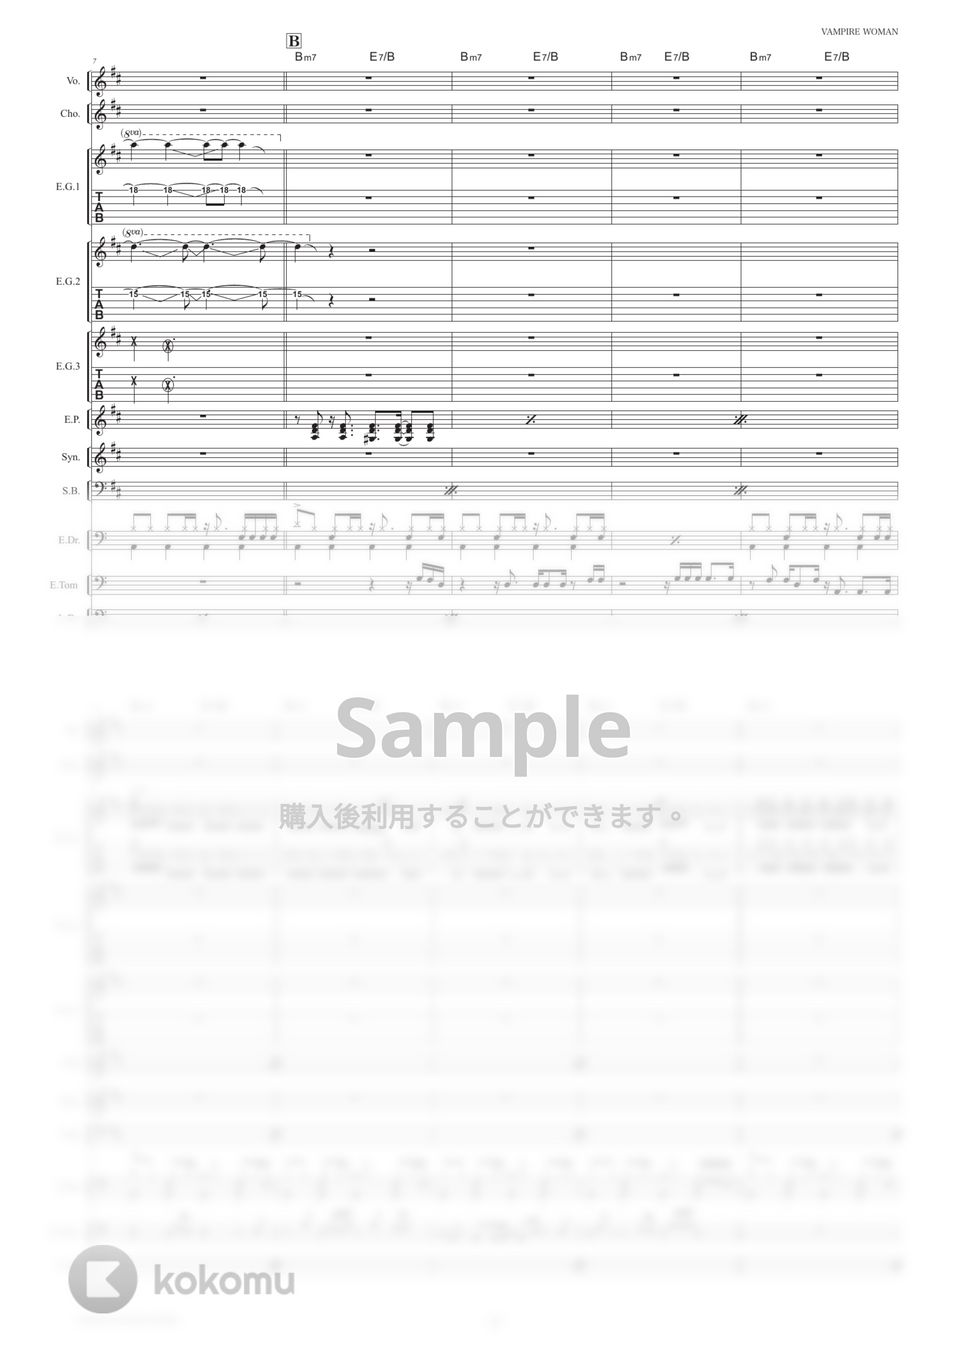 B'z - VAMPIRE WOMAN (バンドスコア) by TRIAD GUITAR SCHOOL